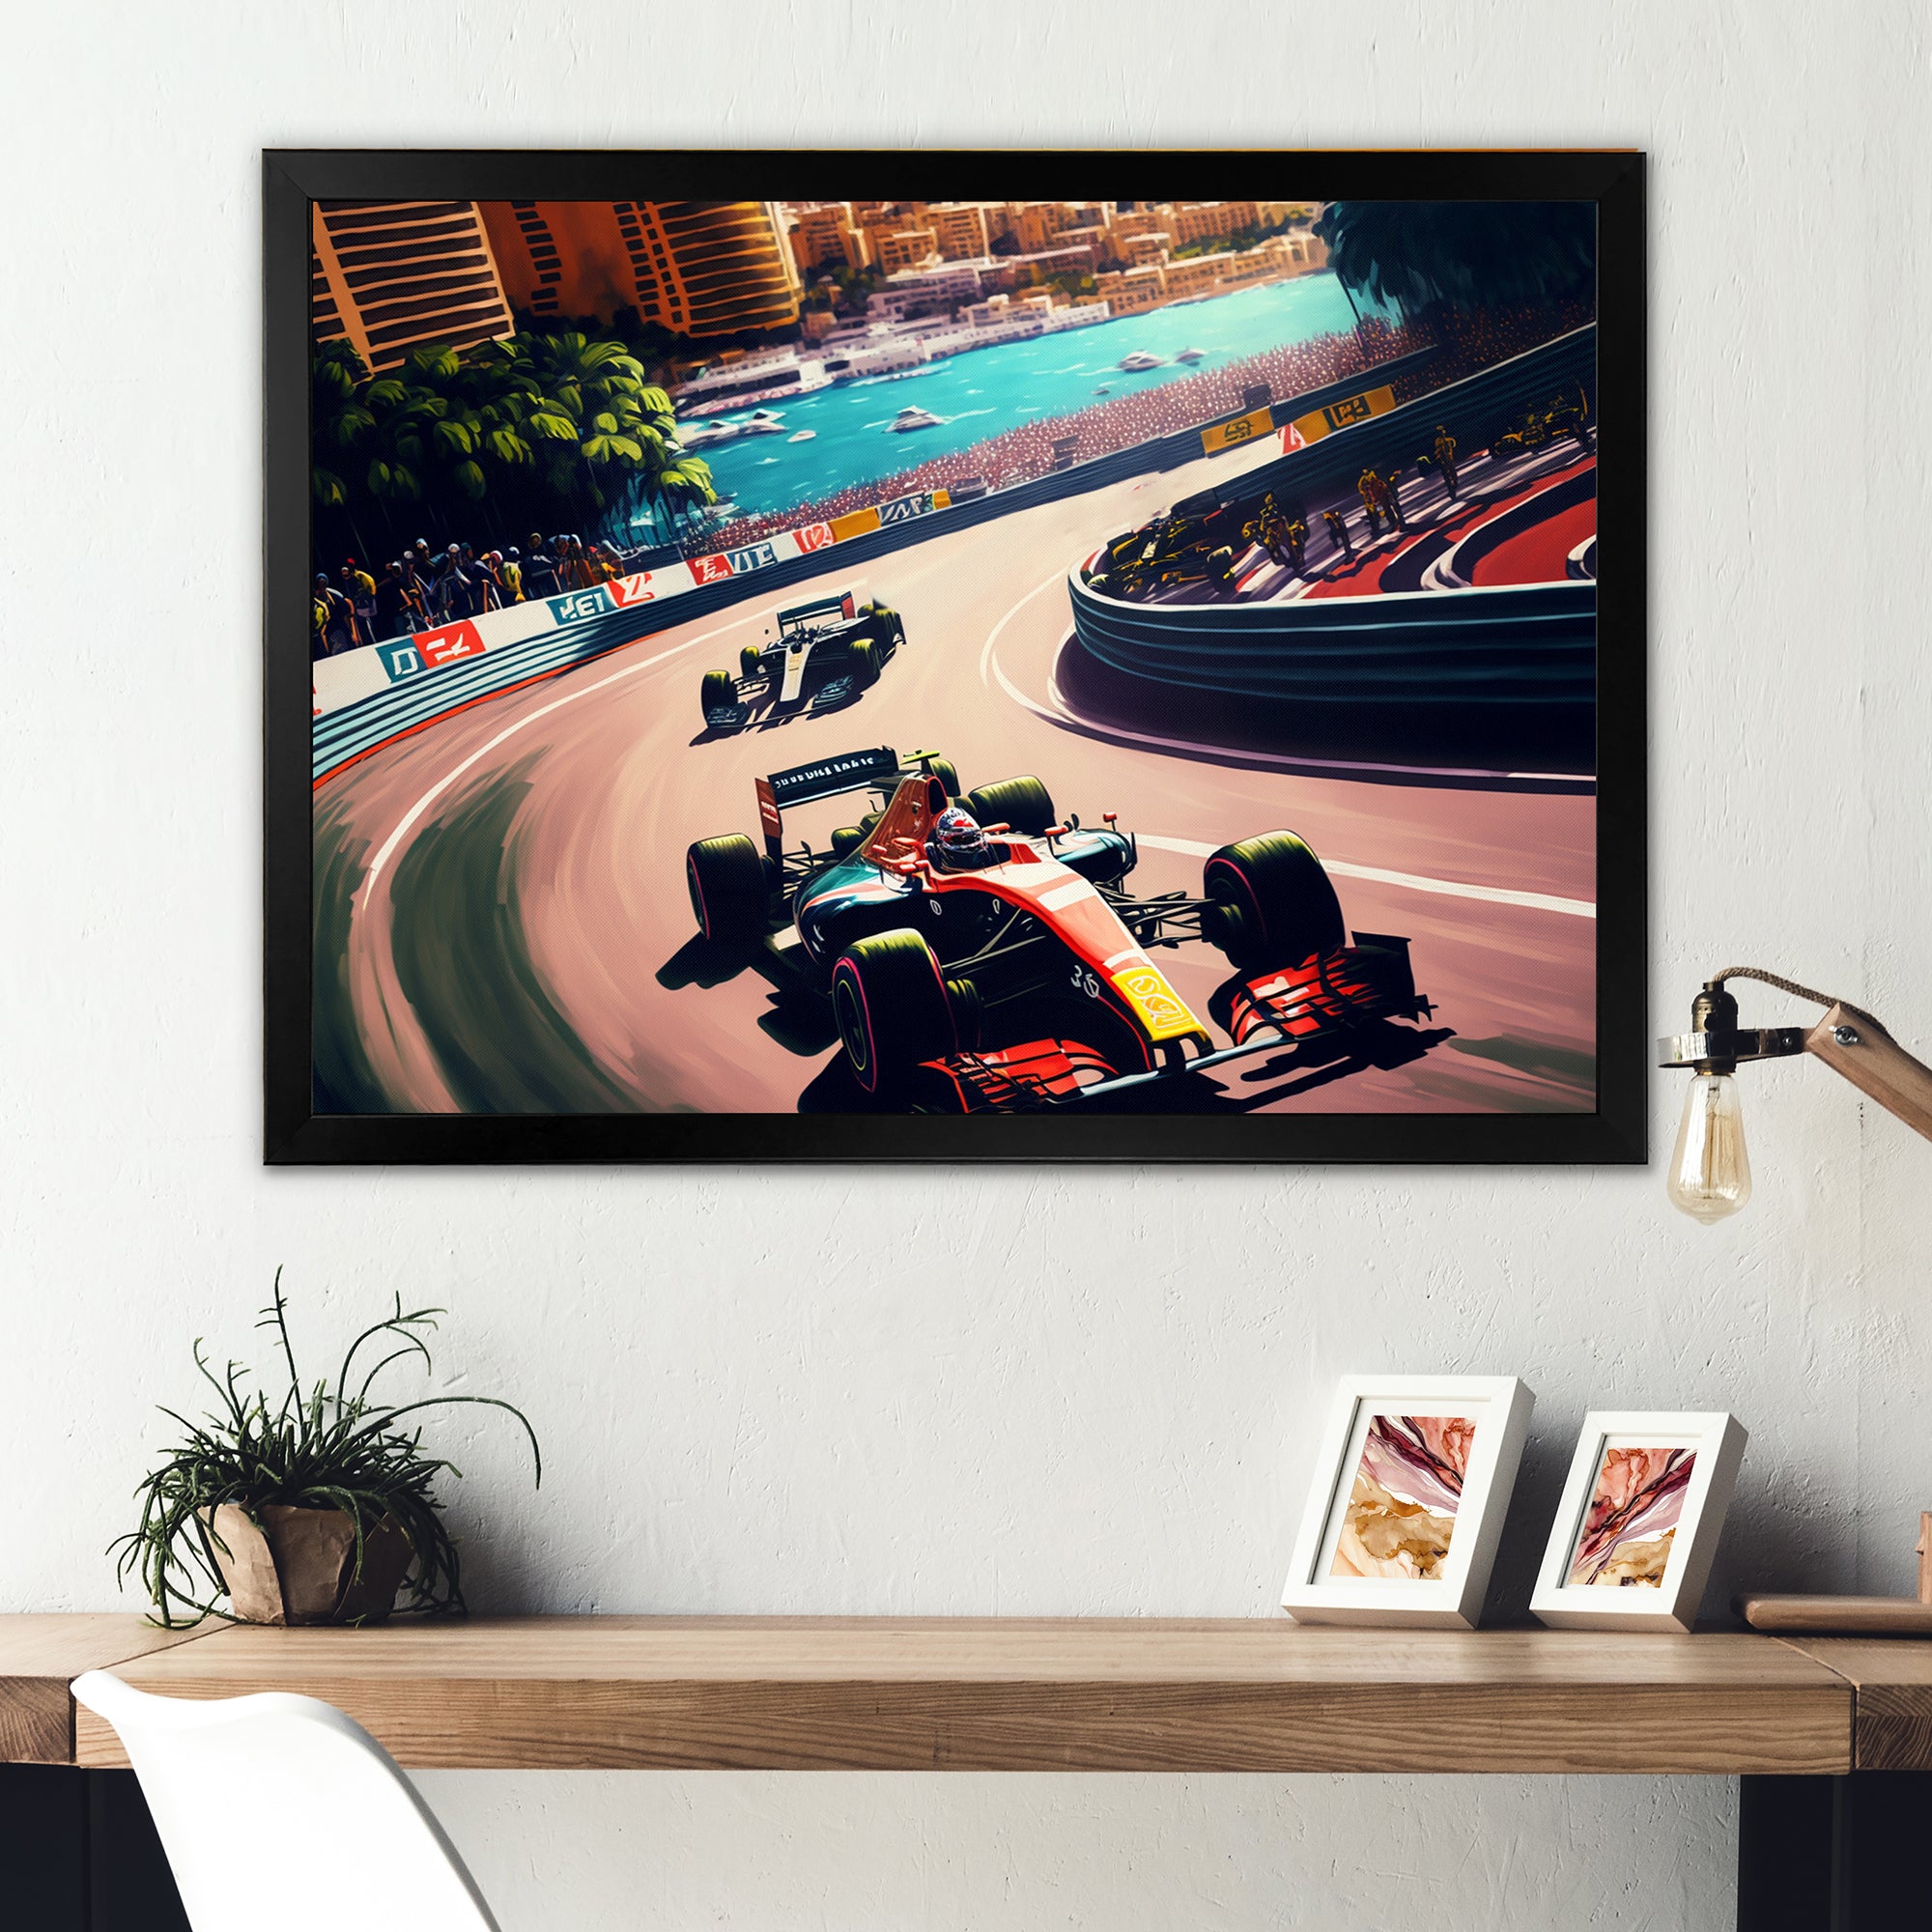 Racing car in Monaco GP VI